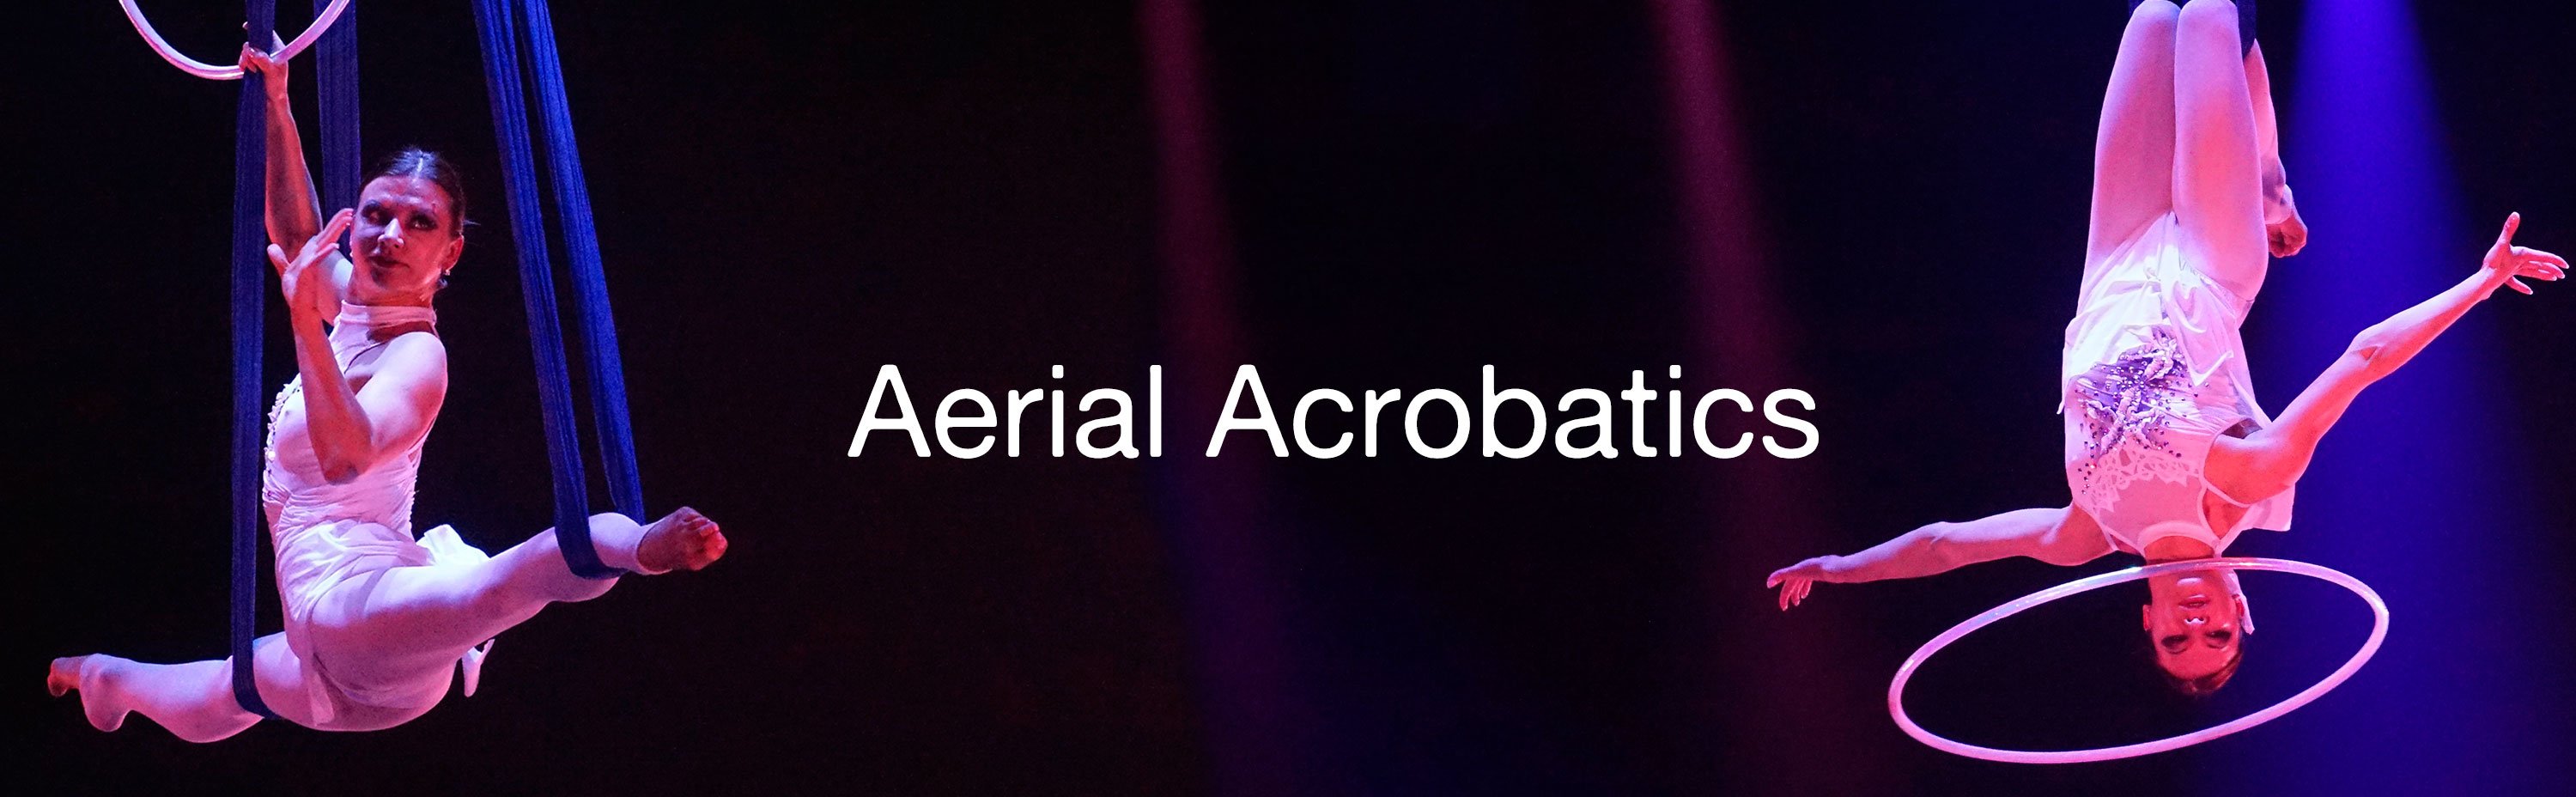 Aerial Acrobatics